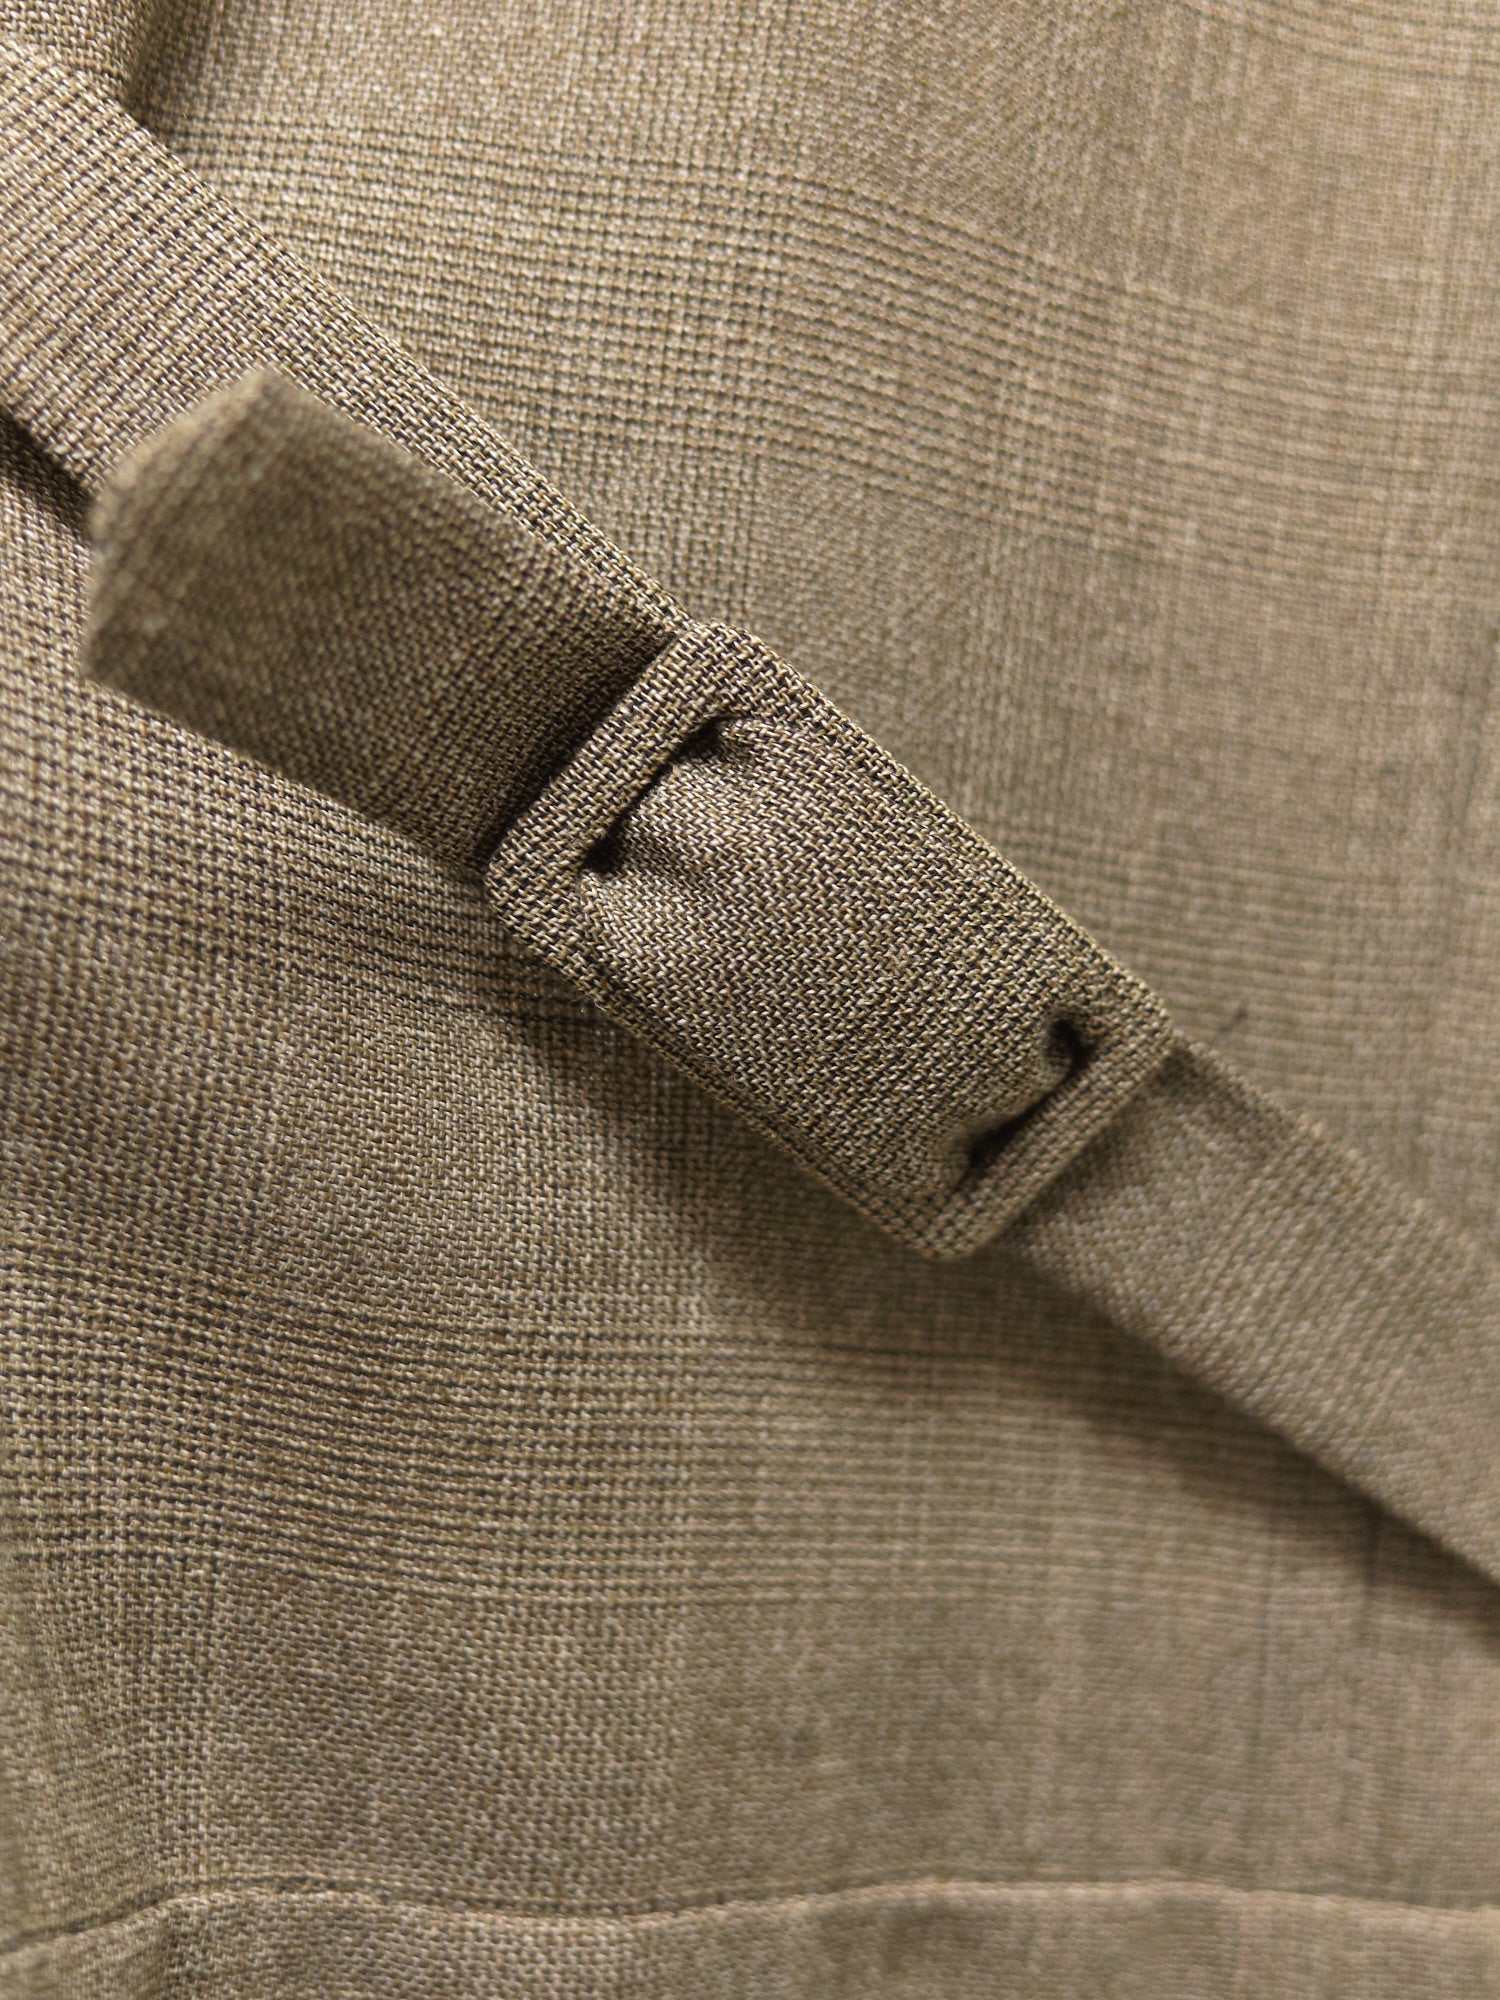 Maison Martin Margiela SS2001 brown wool check facing detail sleeveless dress 38